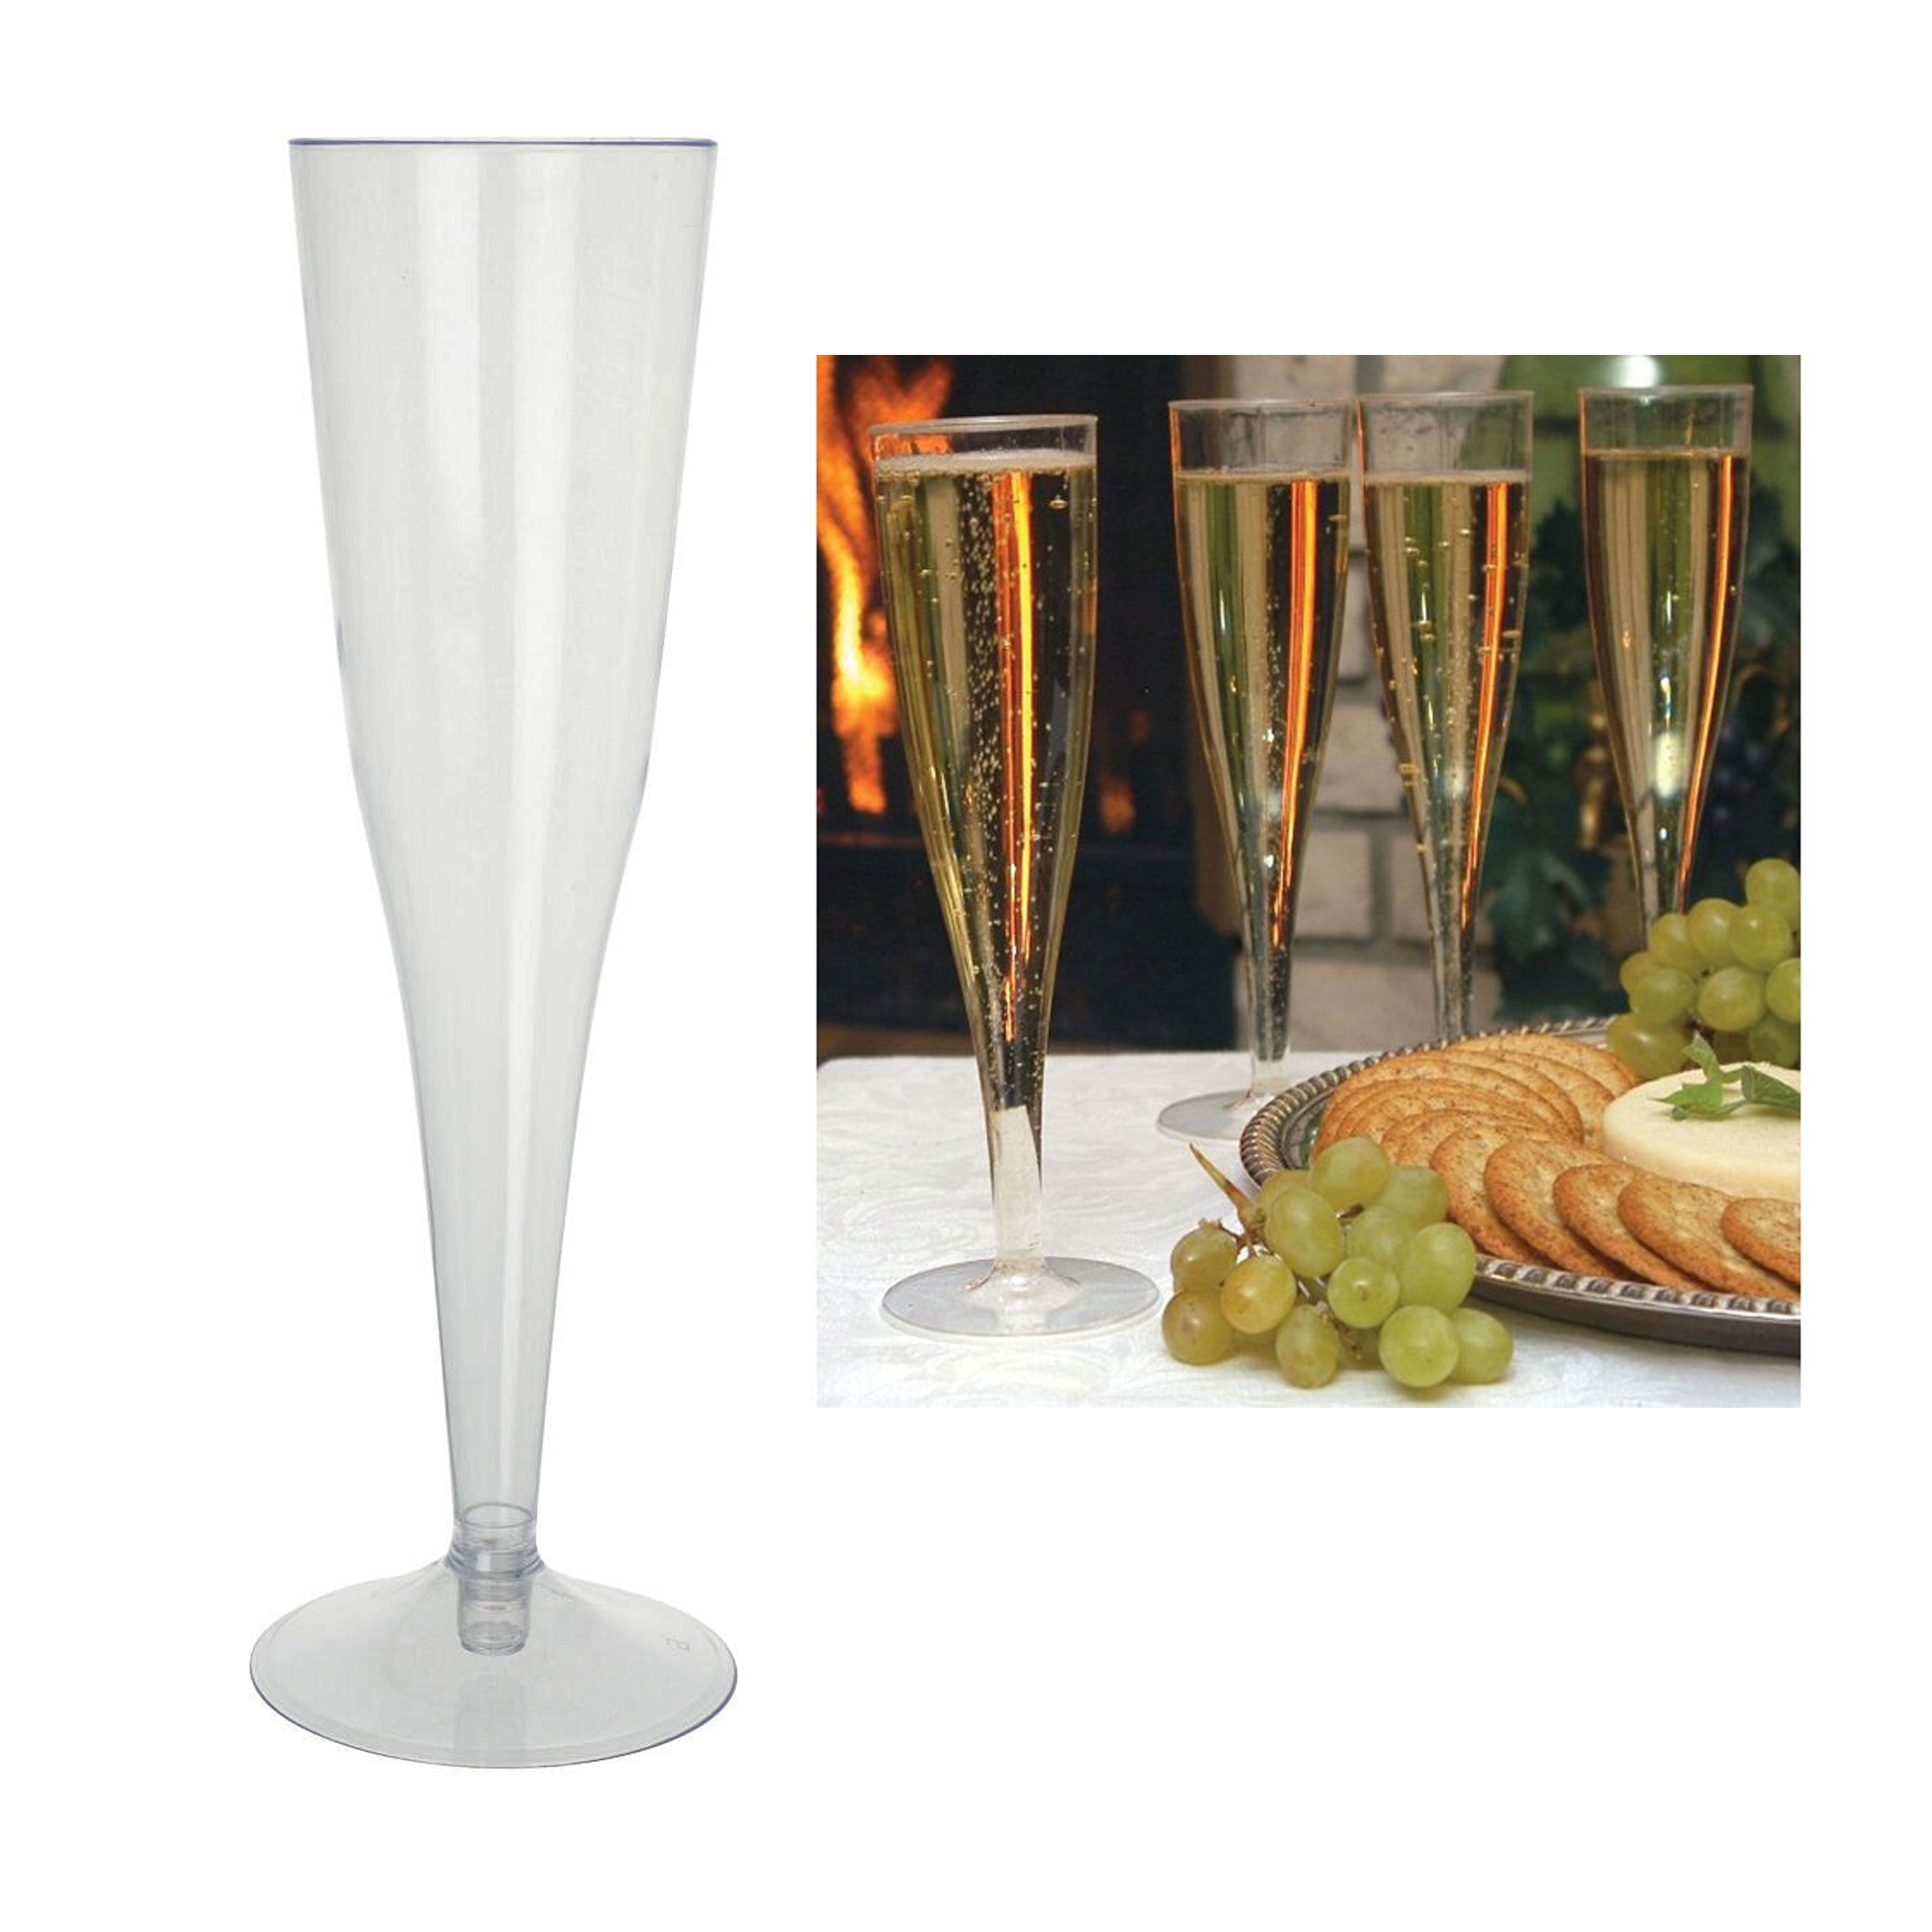 Champagne Flutes Set of 4 - 6 oz Champagne Glasses, European Mimosa  Glasses, Square Champagne Flute,…See more Champagne Flutes Set of 4 - 6 oz